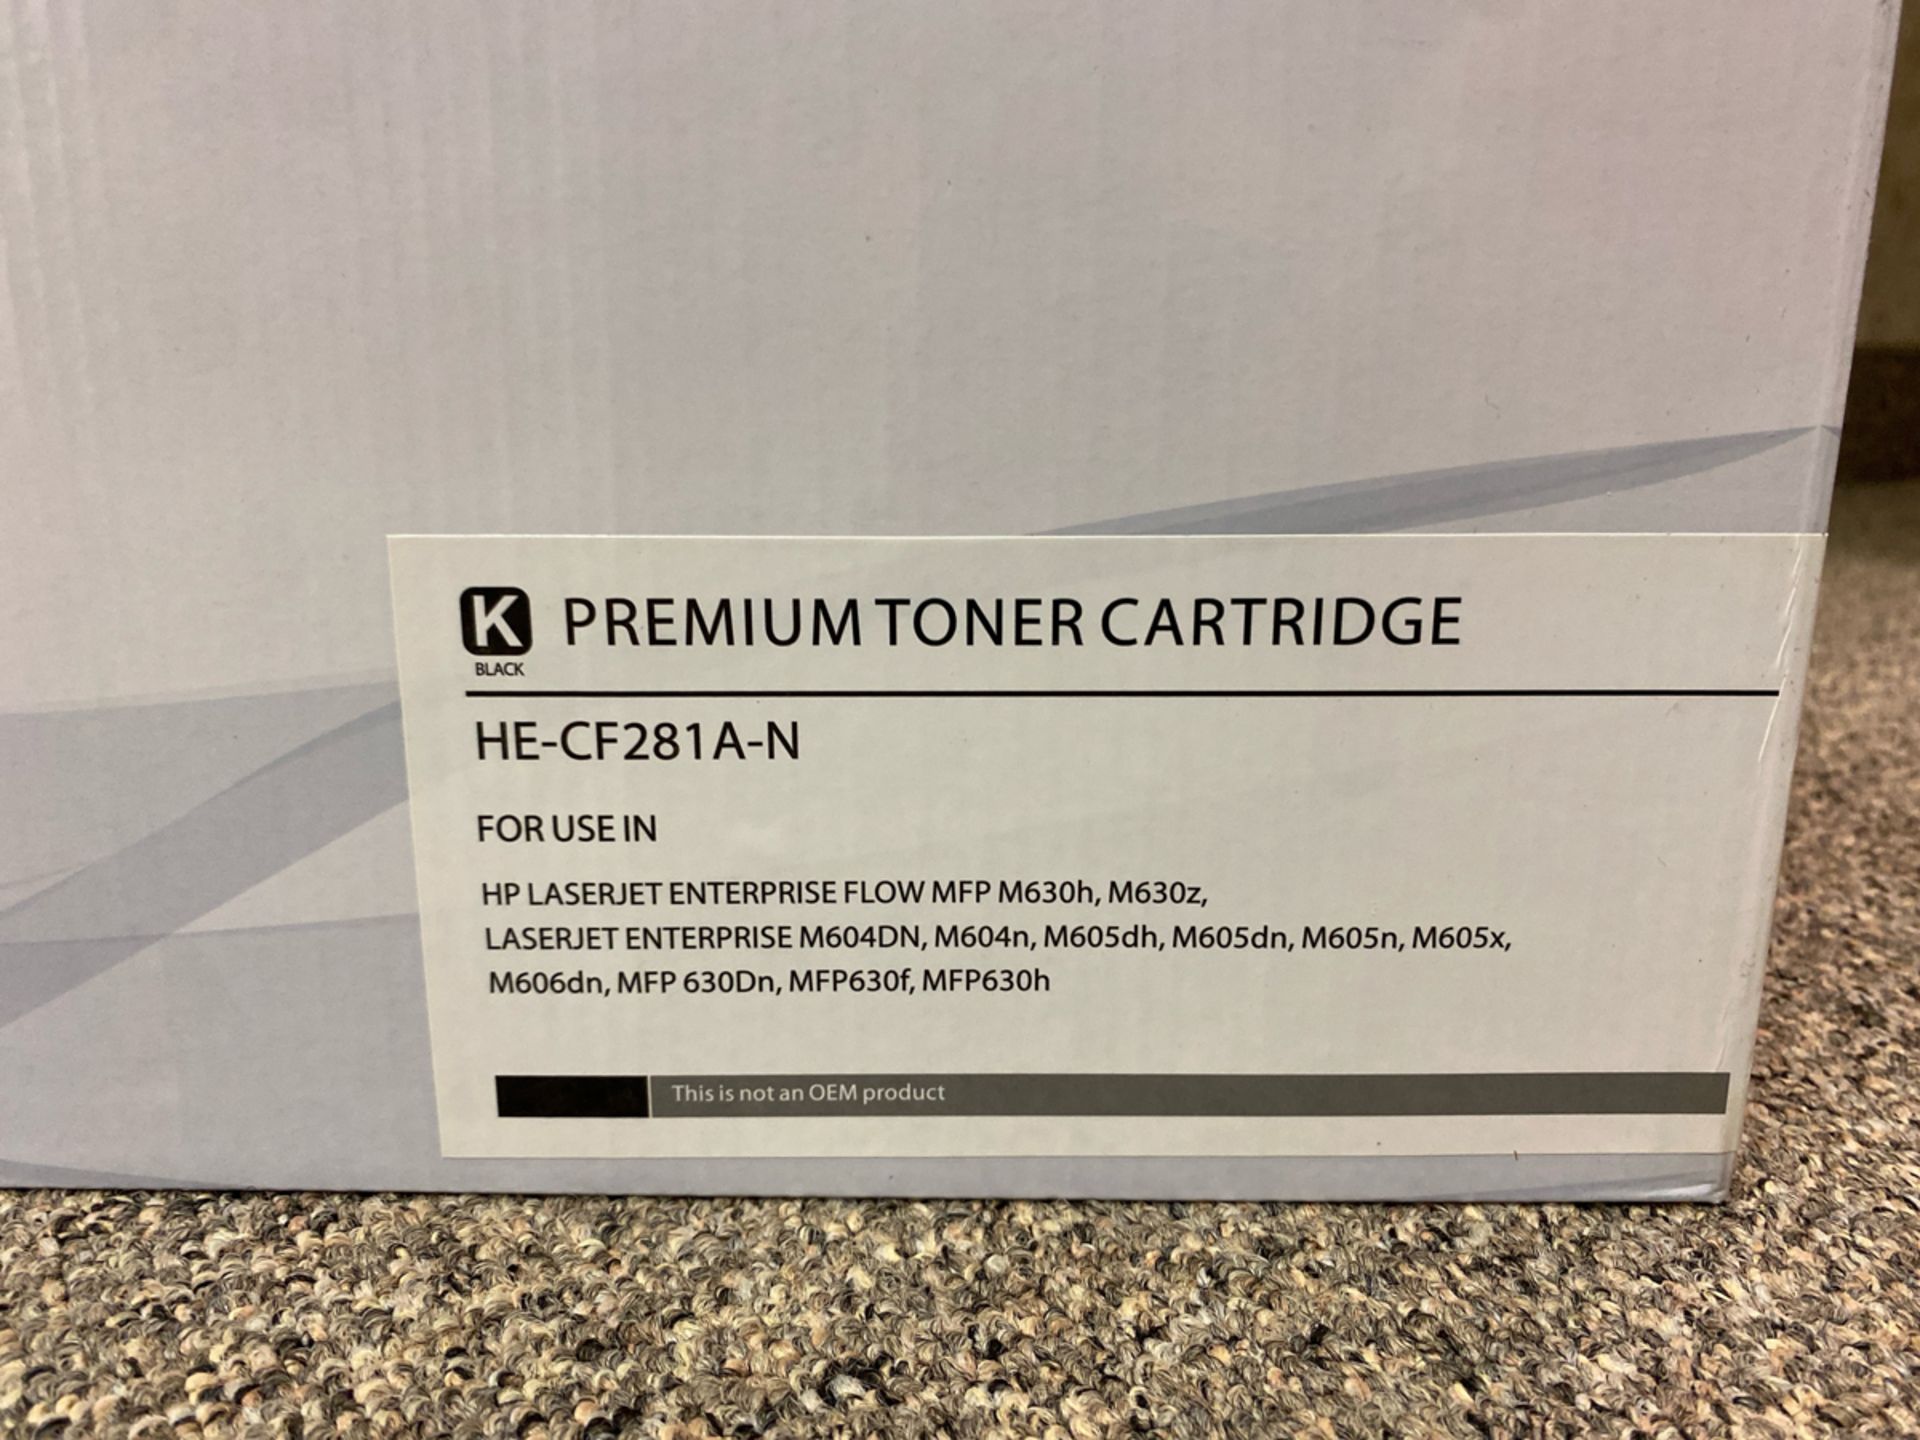 Premium Toner Cartridge HE-CF281A-N Black Toner Cartridge - Image 2 of 2